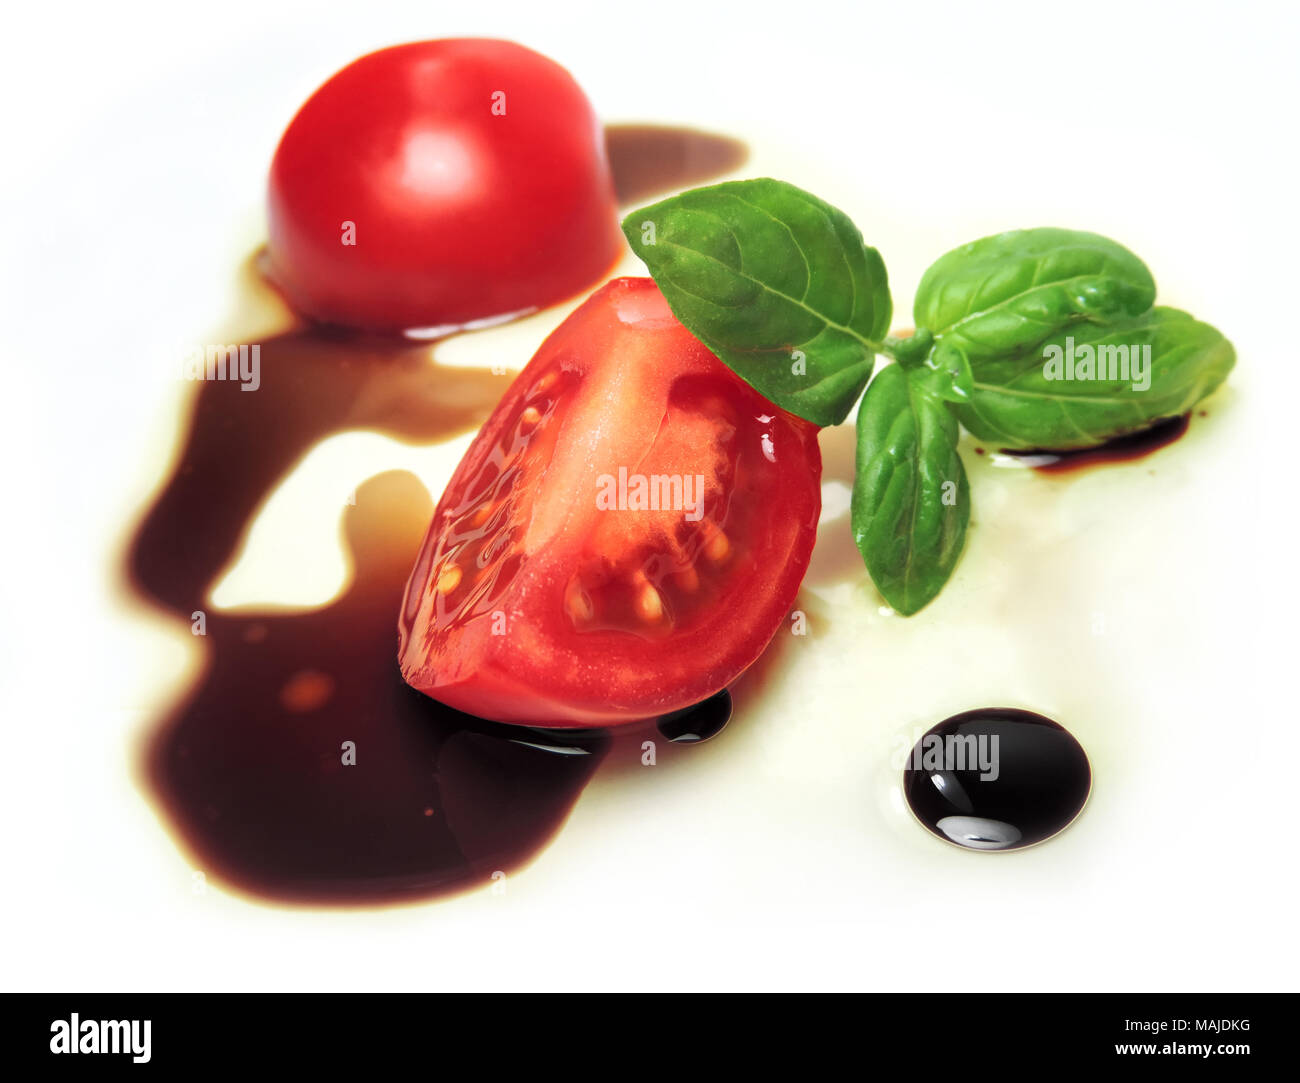 Tomate cerise avec de l'huile et vinaigre, isolé sur fond blanc et décoré de feuilles de basilic. Tranche de tomate et aceito balsamico. Cuisine italienne. Banque D'Images